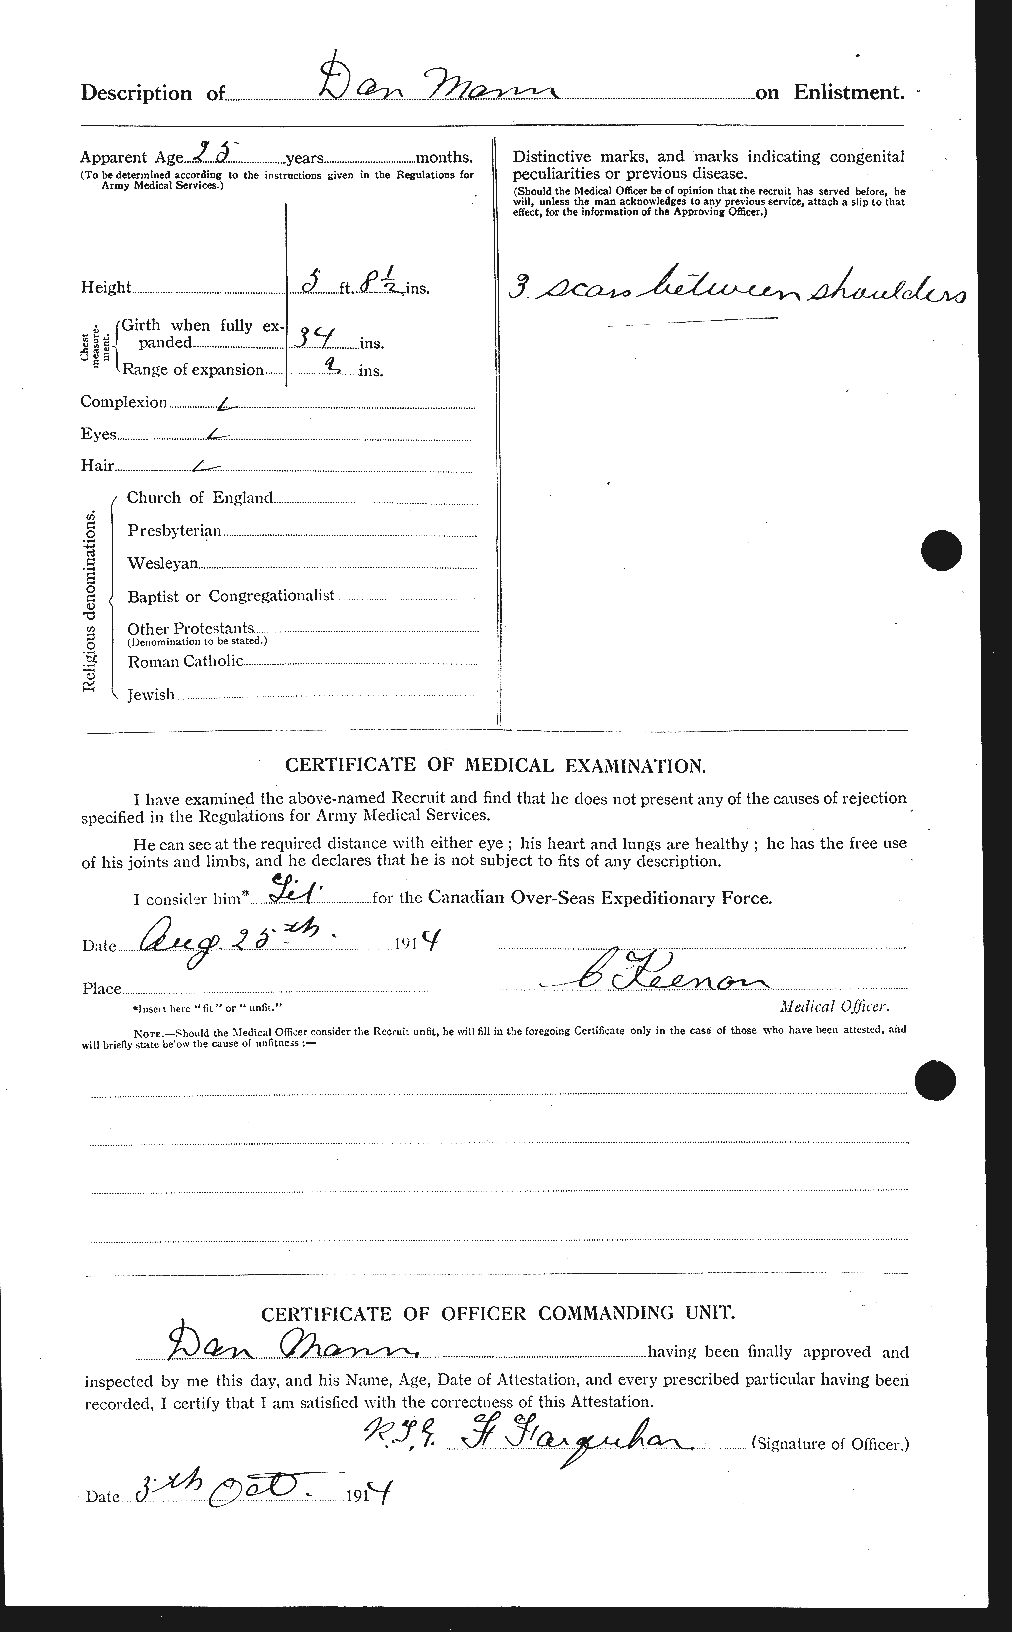 Dossiers du Personnel de la Première Guerre mondiale - CEC 477116b